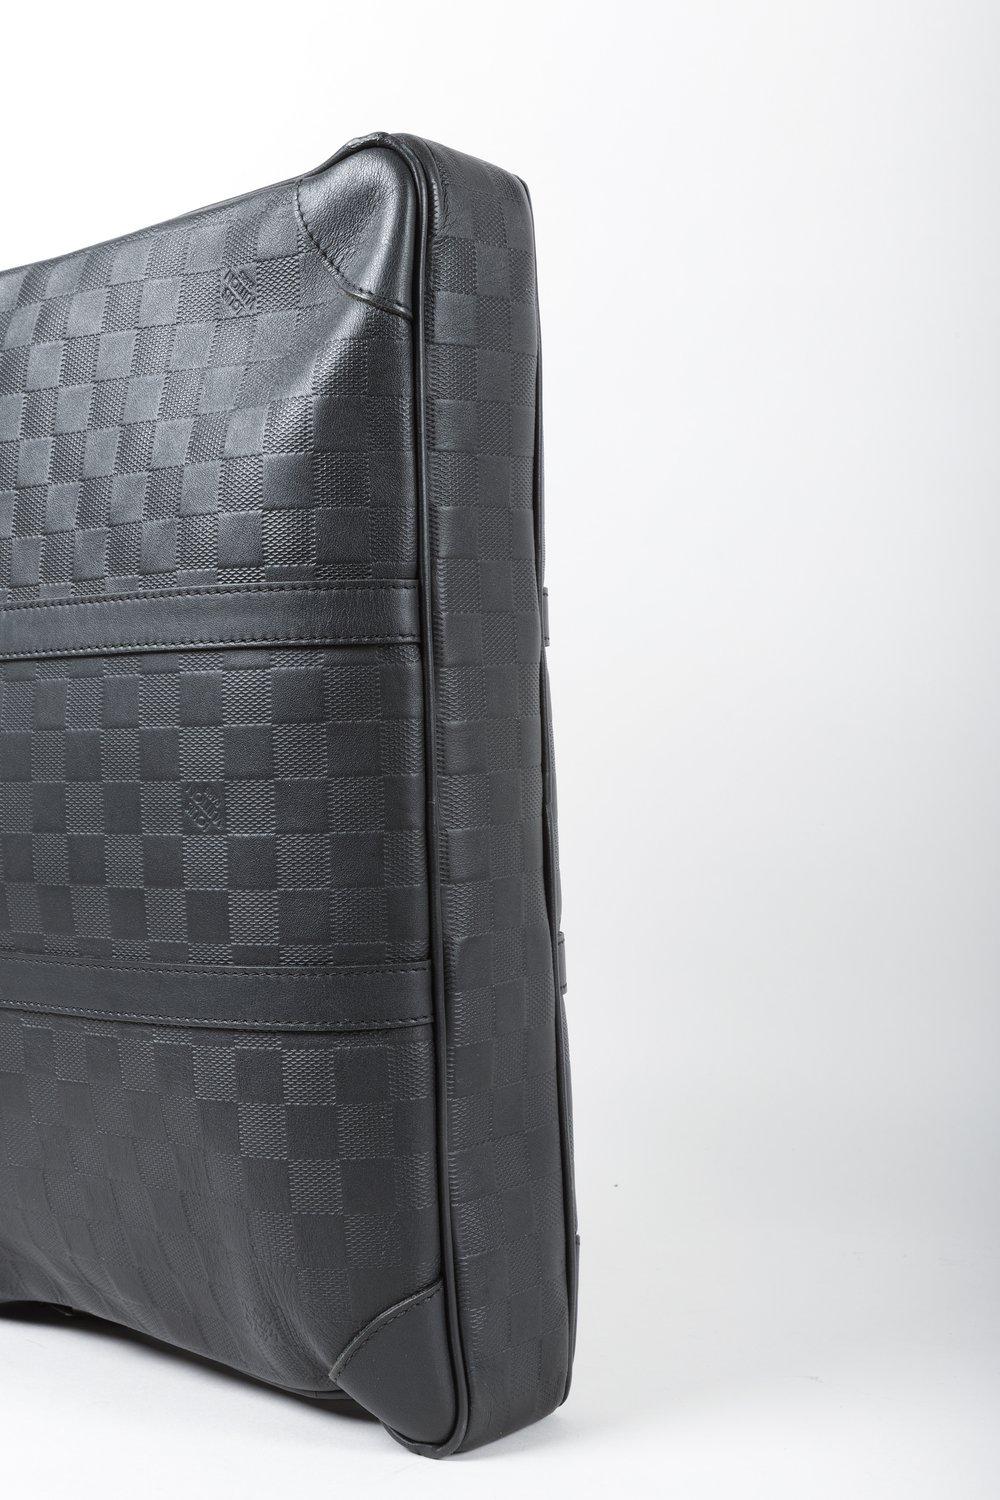 Louis Vuitton Solar Damier Infini Leather Porte Documents Voyage Briefcase  Louis Vuitton